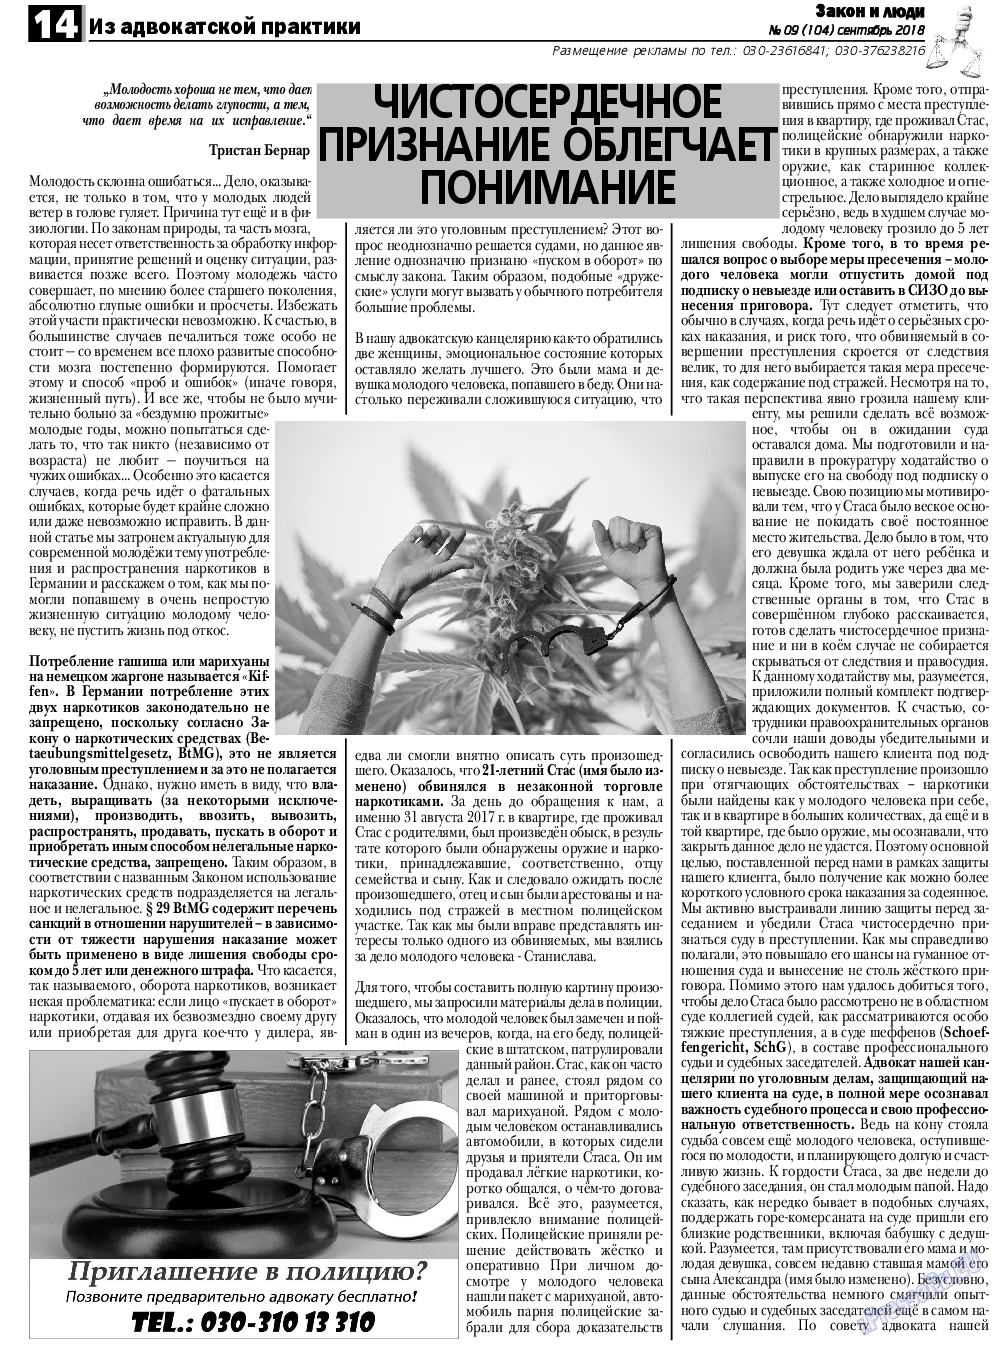 Закон и люди, газета. 2018 №9 стр.14